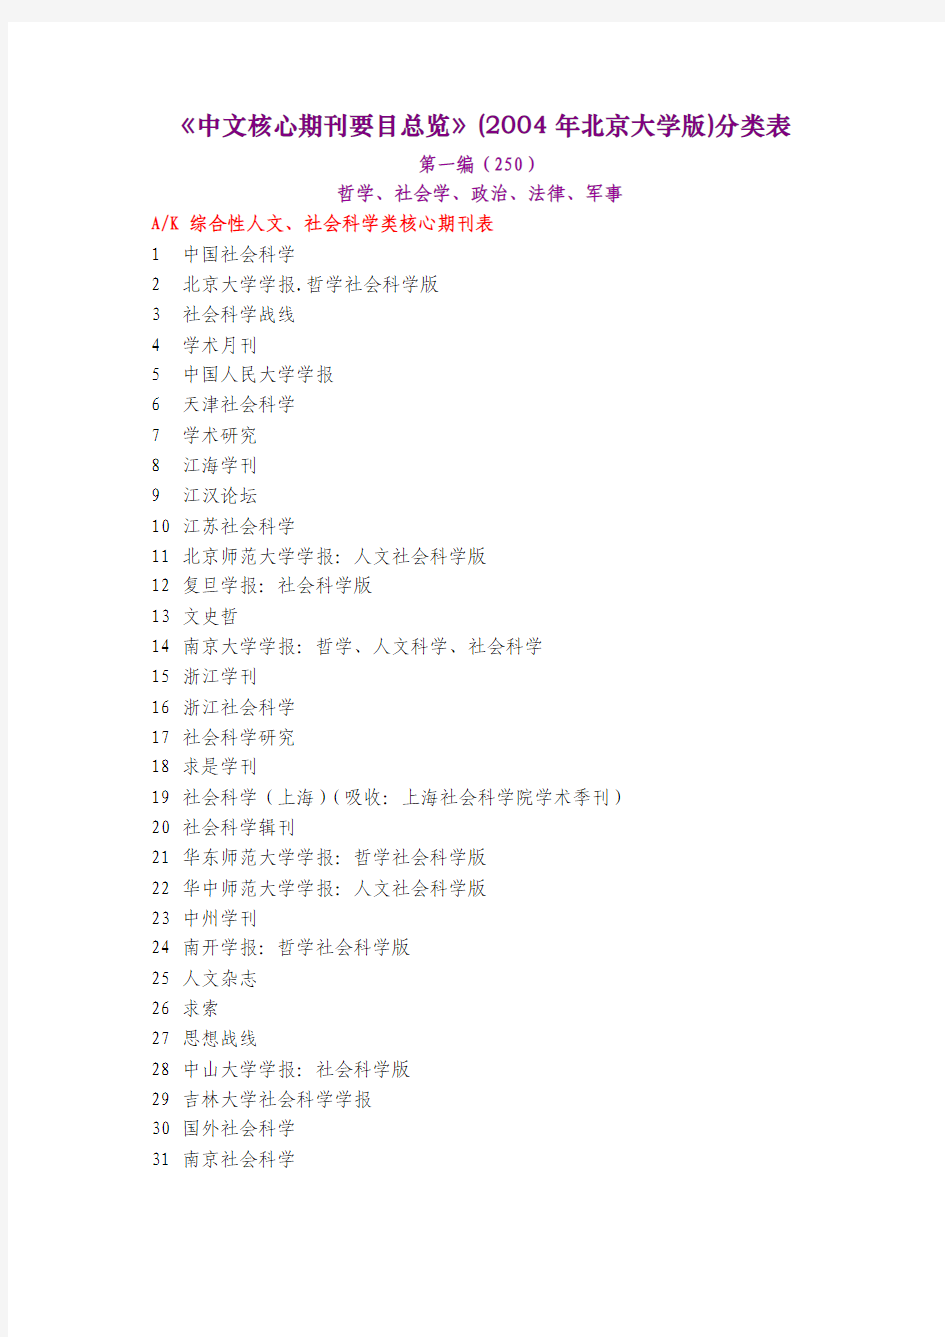 《中文核心期刊要目总览》(2004年北京大学版)分类表